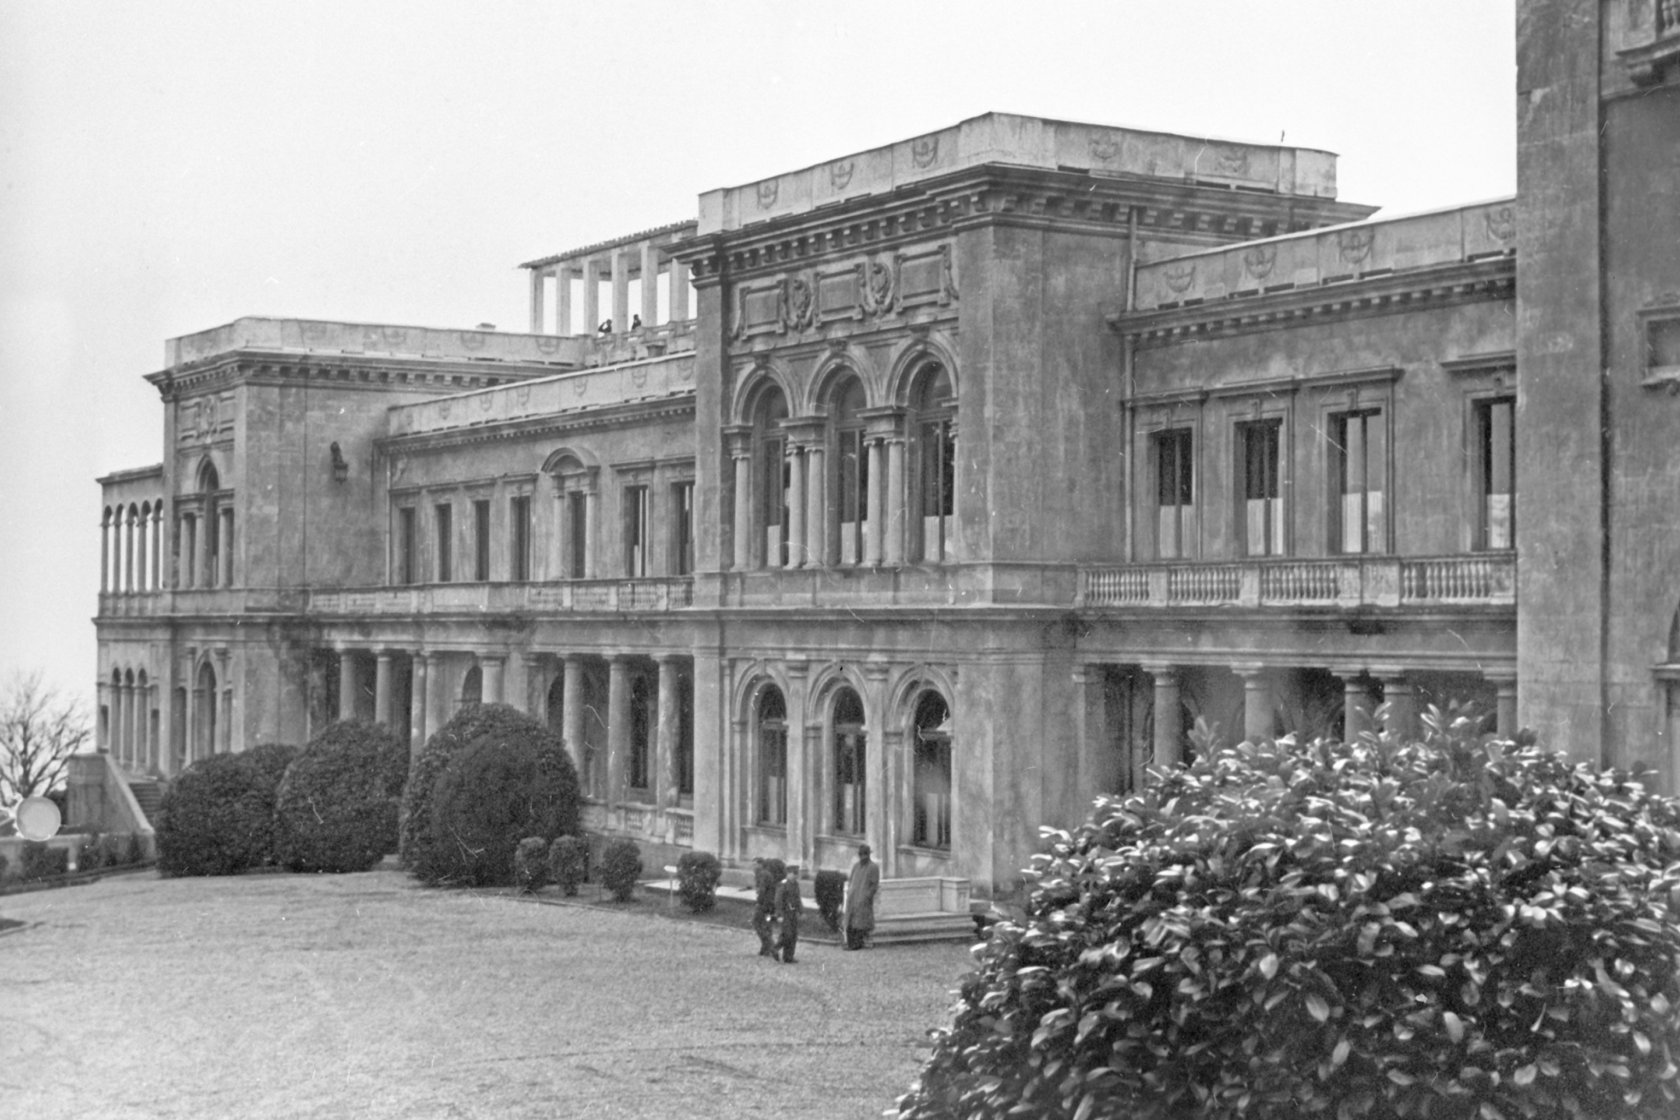 ялтинская конференция в ливадийском дворце